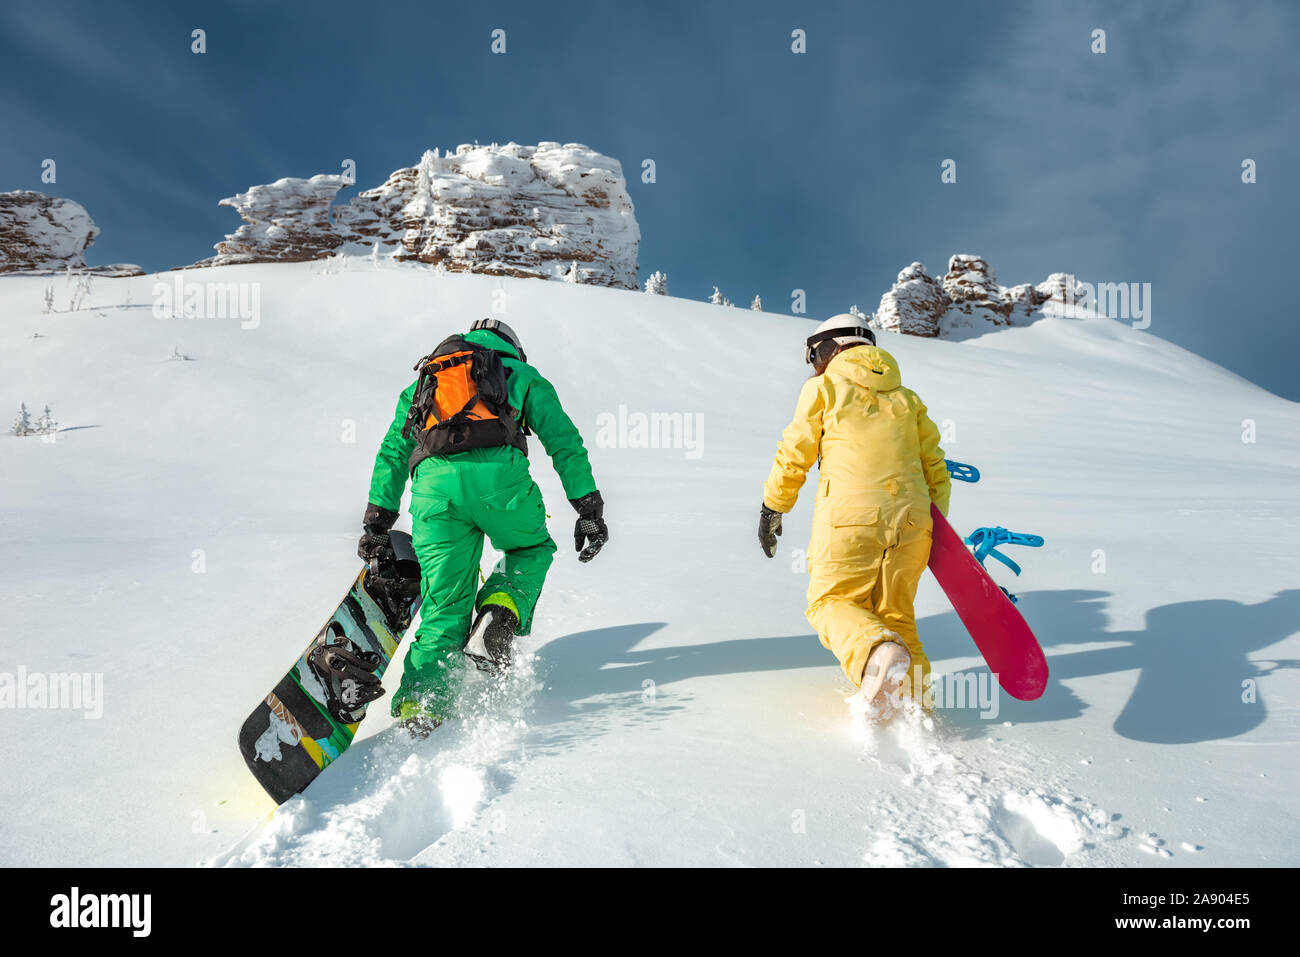 Zwei Snowboarder bergauf. Backcountry Skiing und Snowboarding Konzept bei Ski Resort Stockfoto